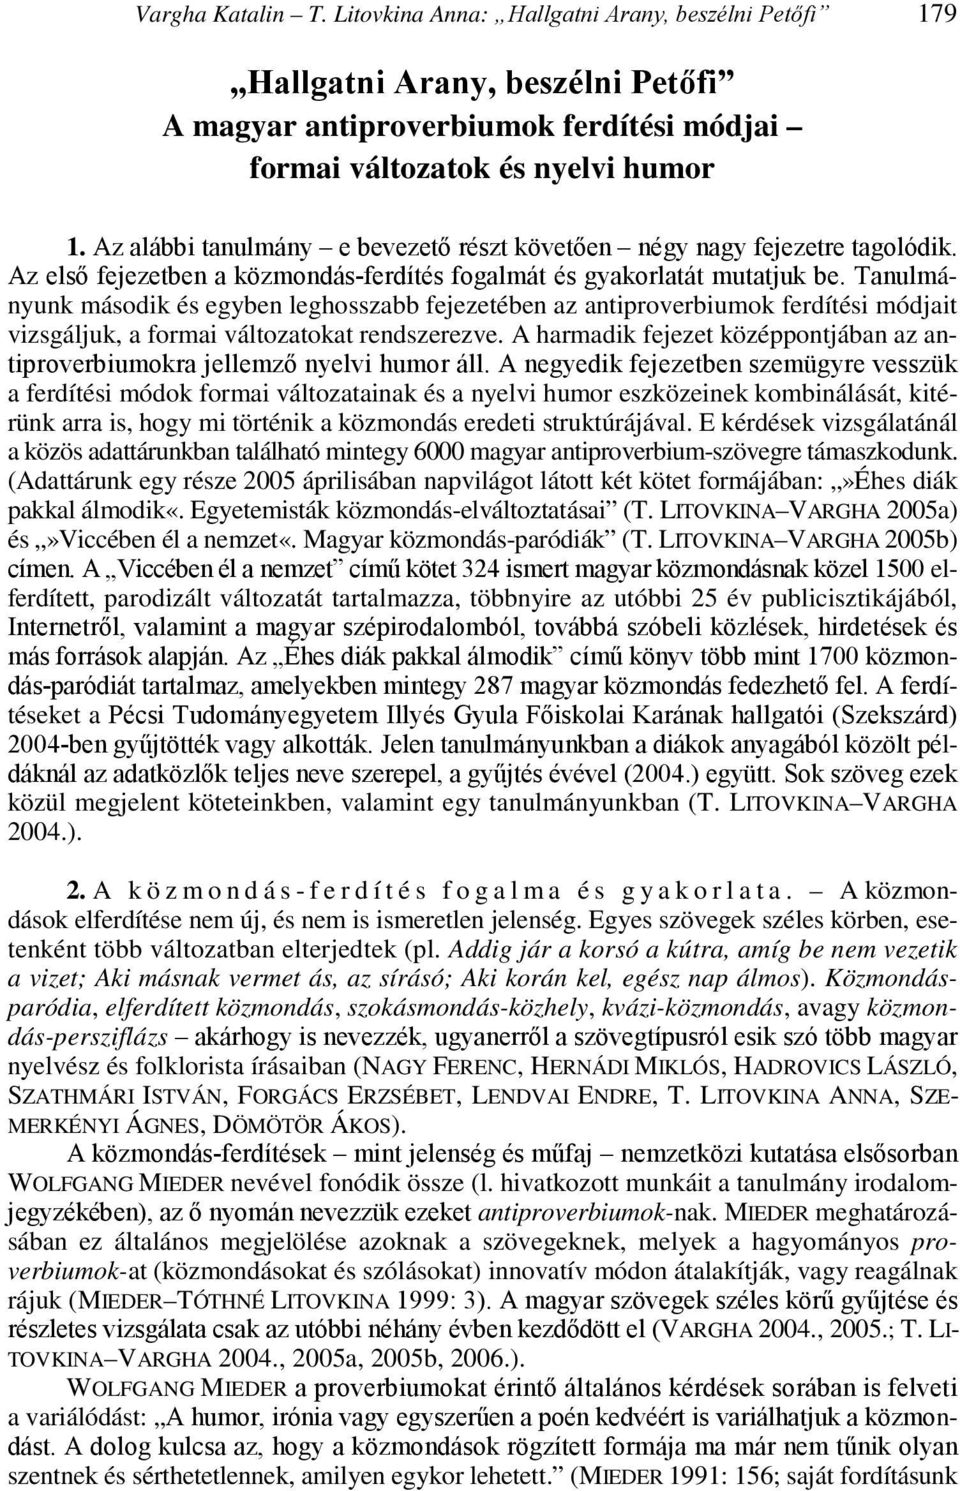 Hallgatni Arany, beszélni Petıfi - PDF Ingyenes letöltés